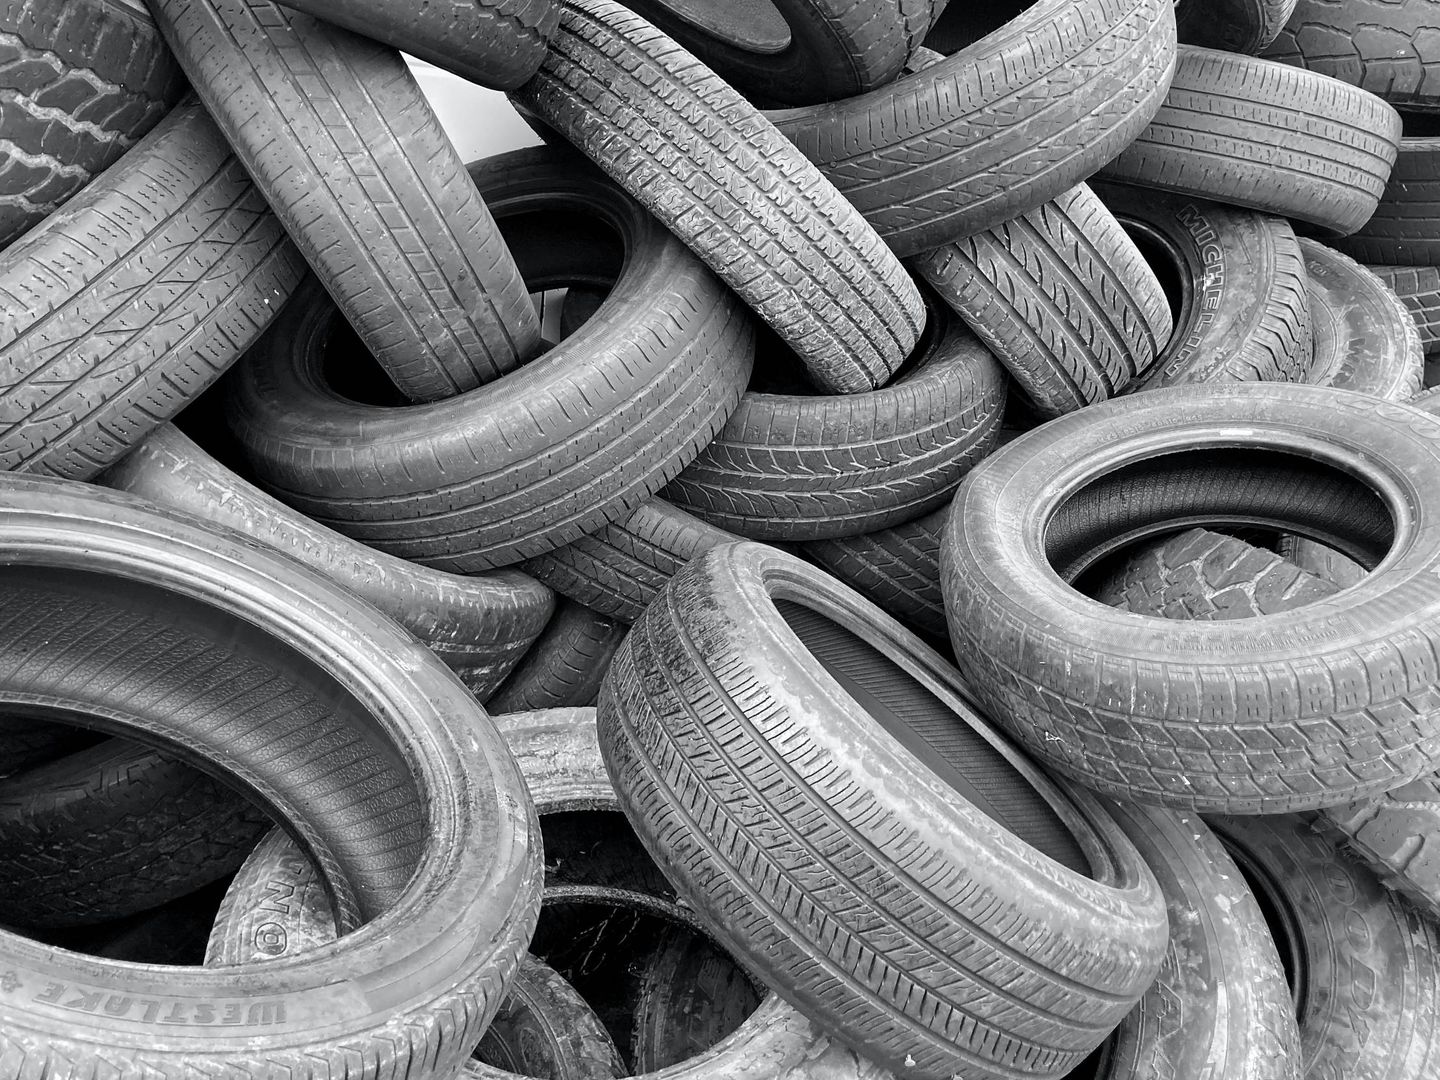 Se espera que a lo largo de este año se eliminen las toneladas de neumáticos usados que quedan. (Unsplash)